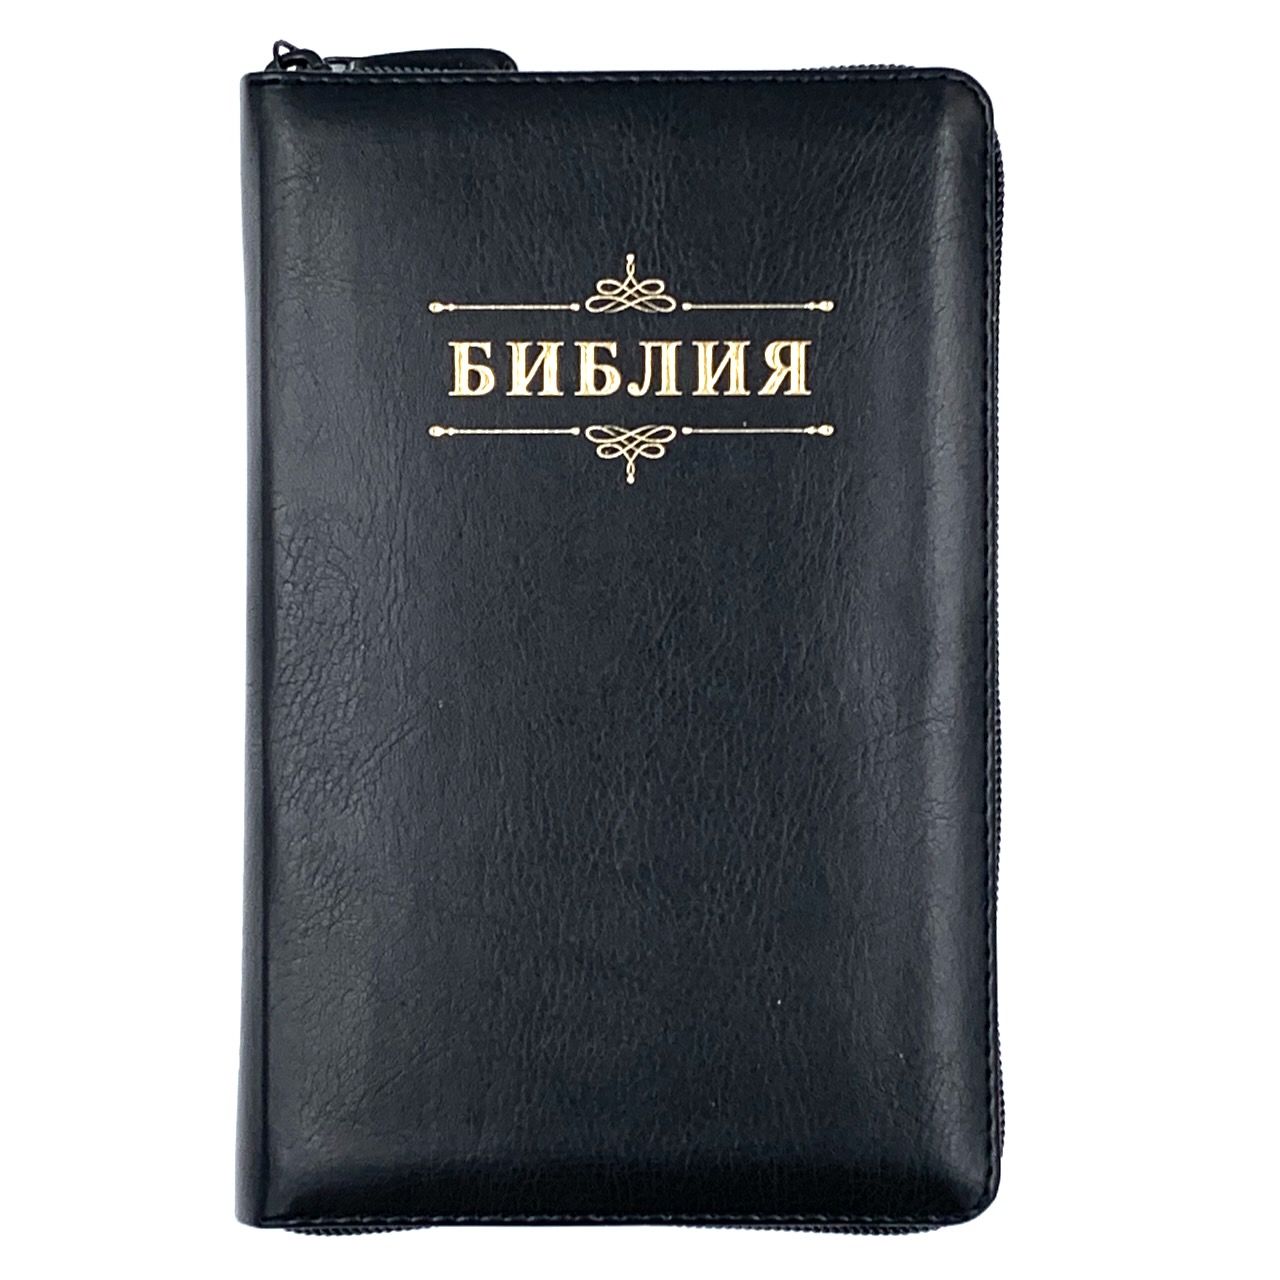 Библия 048 zti код 24048-18 дизайн "Библия с вензелем", переплет из искусственой кожи  на молнии с индексами, цвет черный формат 125*195 мм